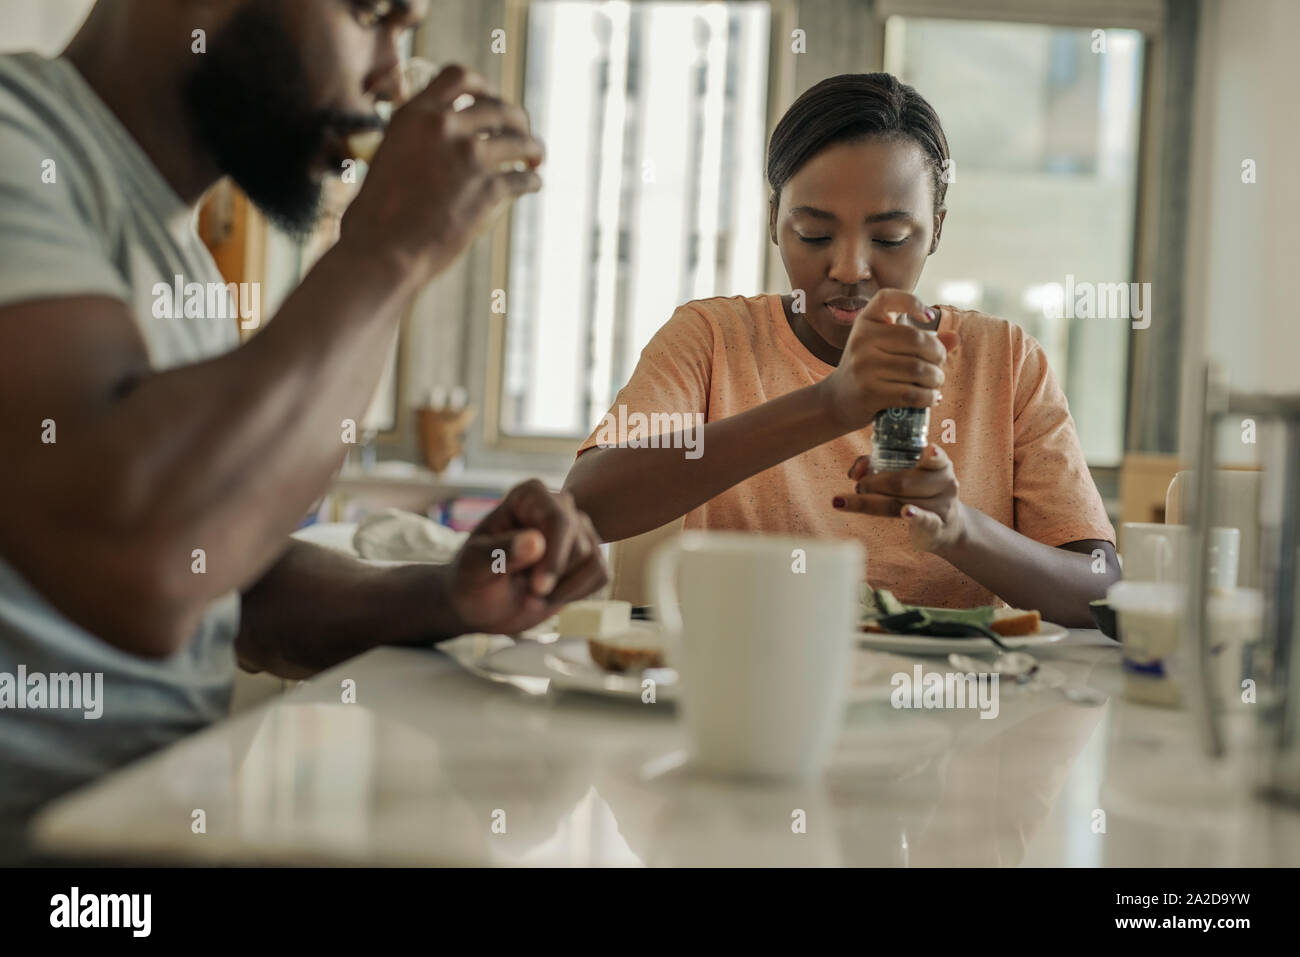 Giovane americano africano giovane seduto a casa avendo prima colazione Foto Stock